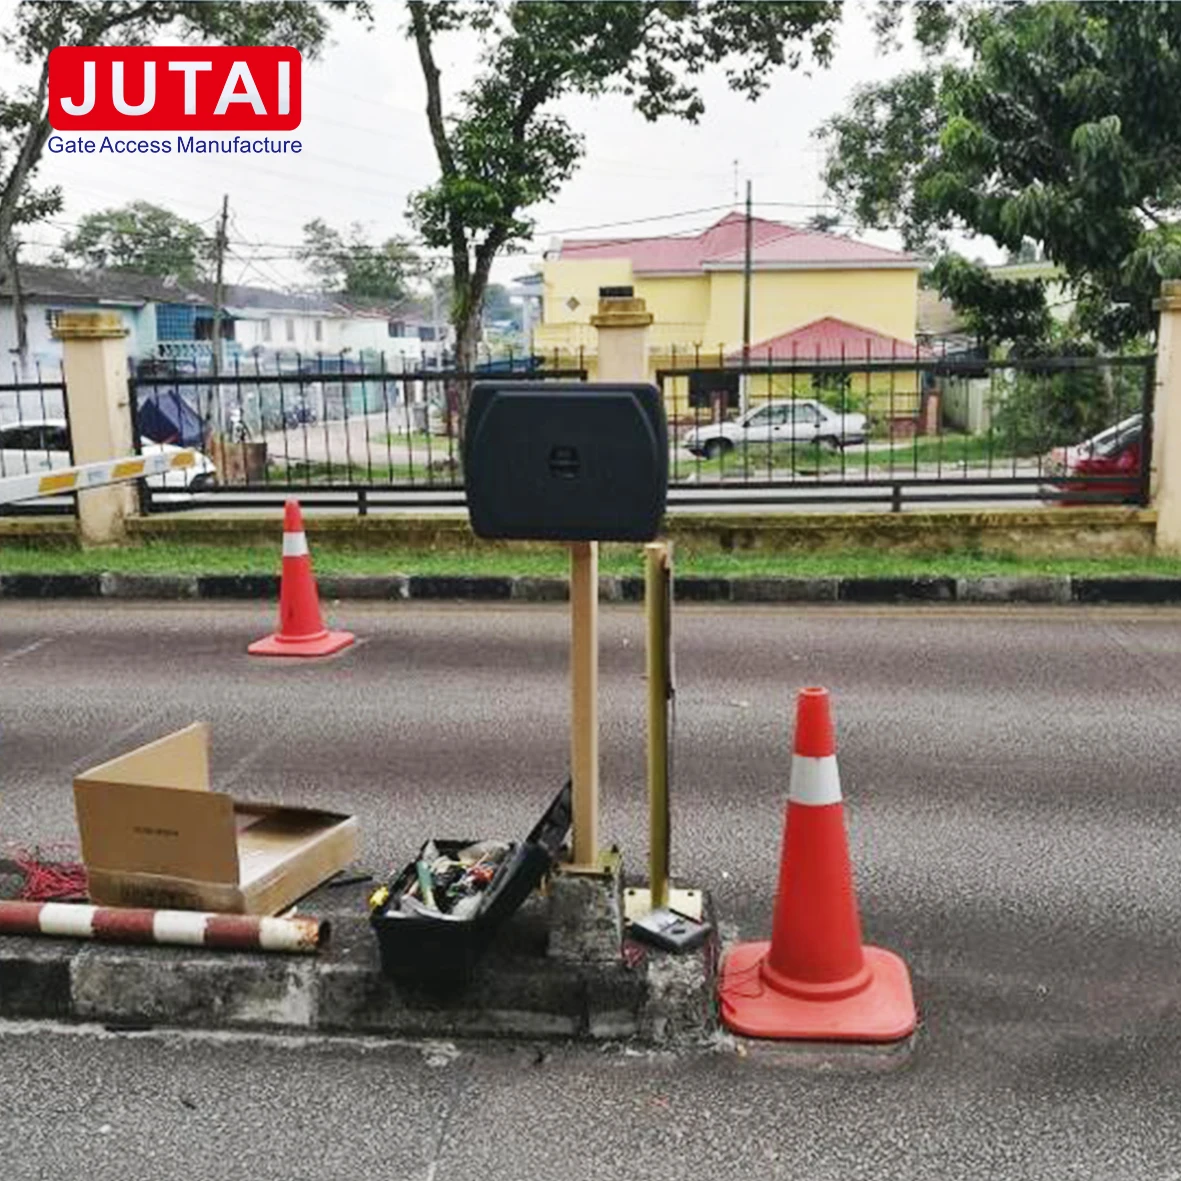 قارئ RFID طويل المدى للوصول إلى Jutai GP99